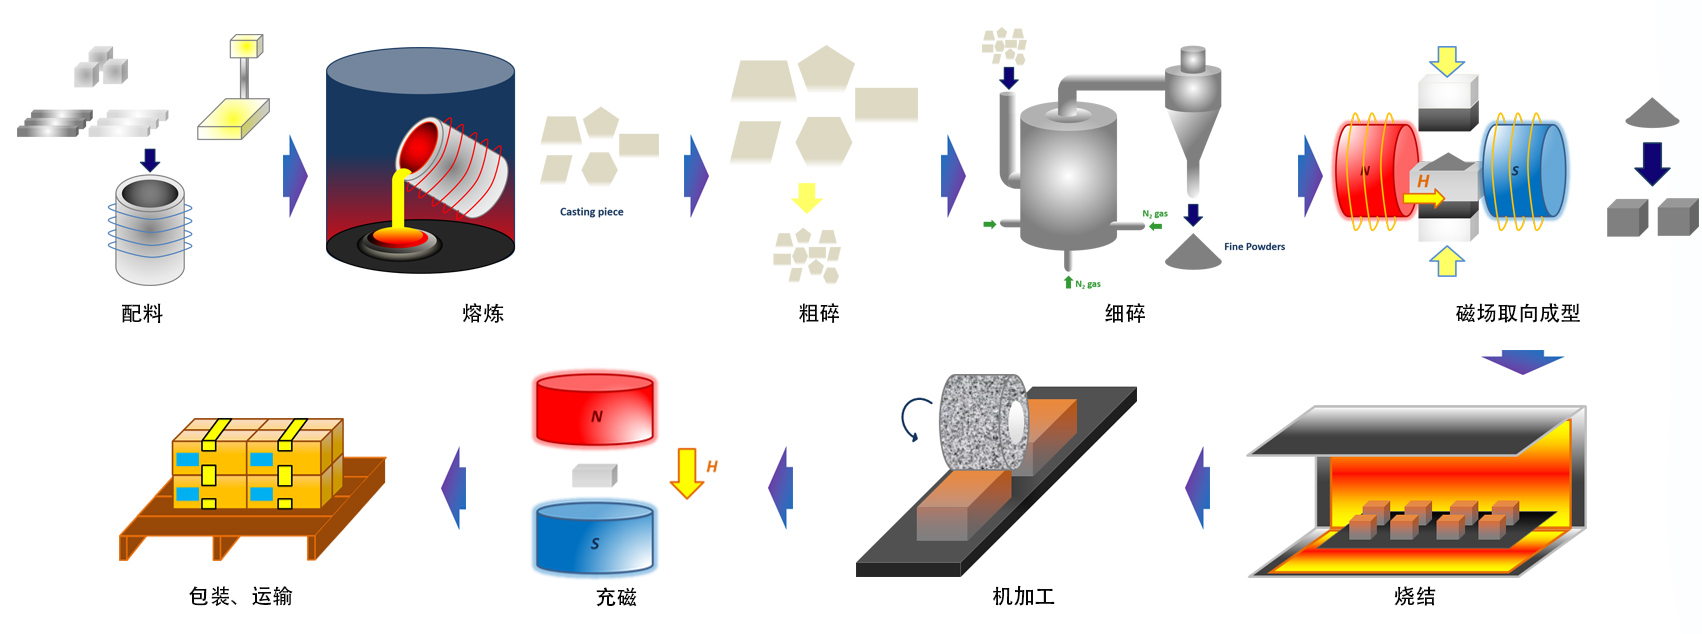 烧结钐钴磁体-生产流程